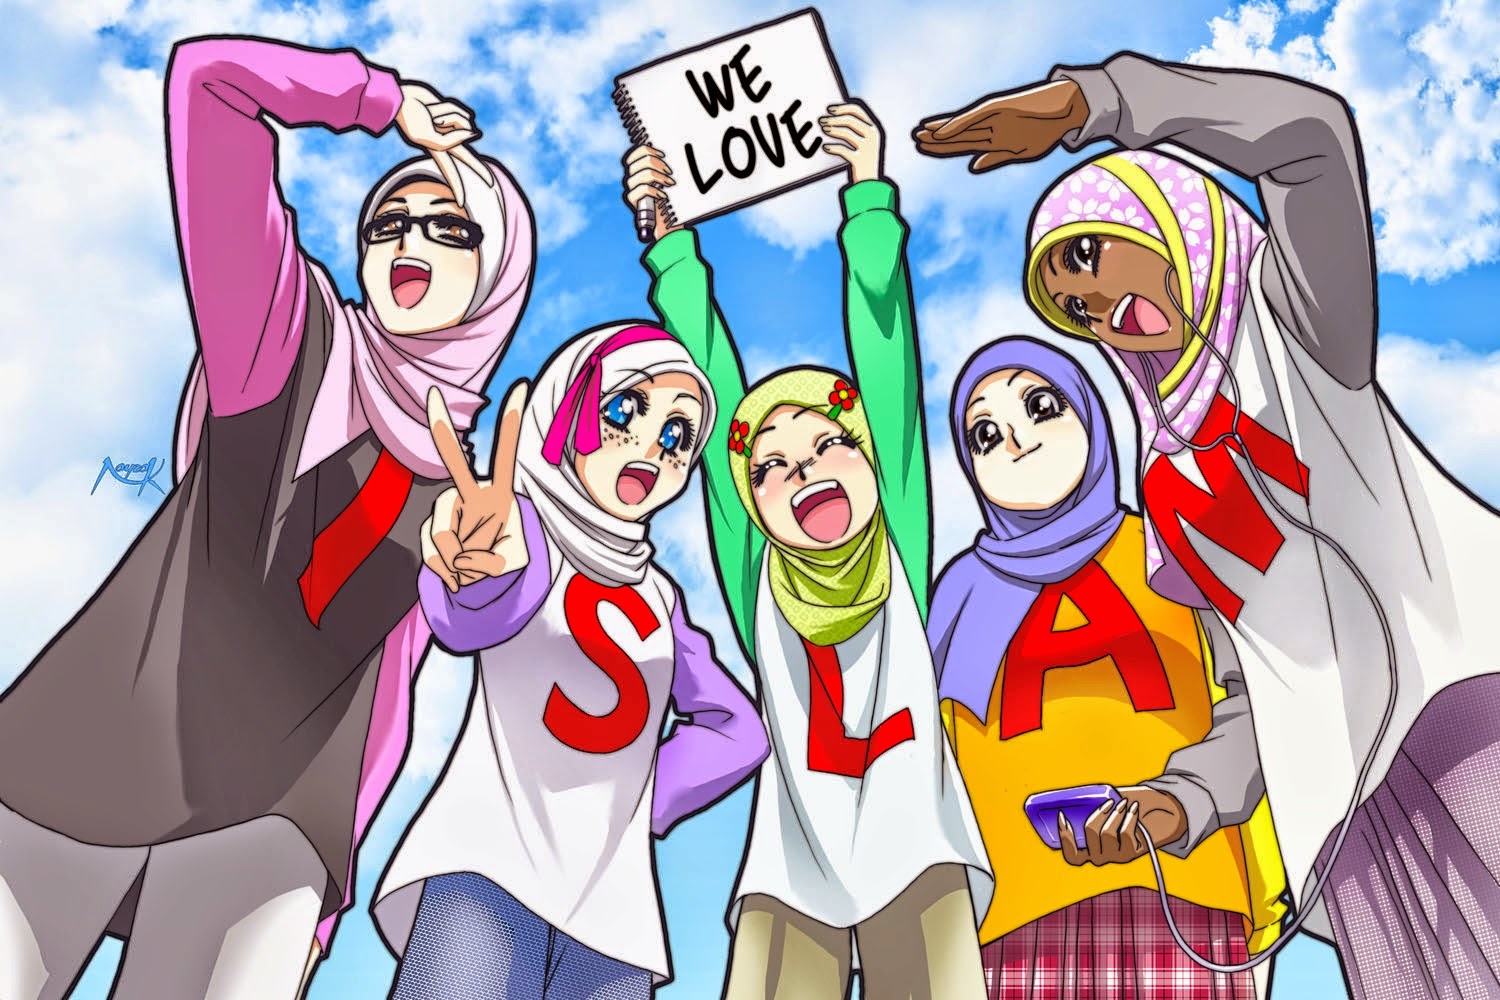  Animasi  Guru  Muslimah  Mengajar Di Kelas Terbaru Galeri 